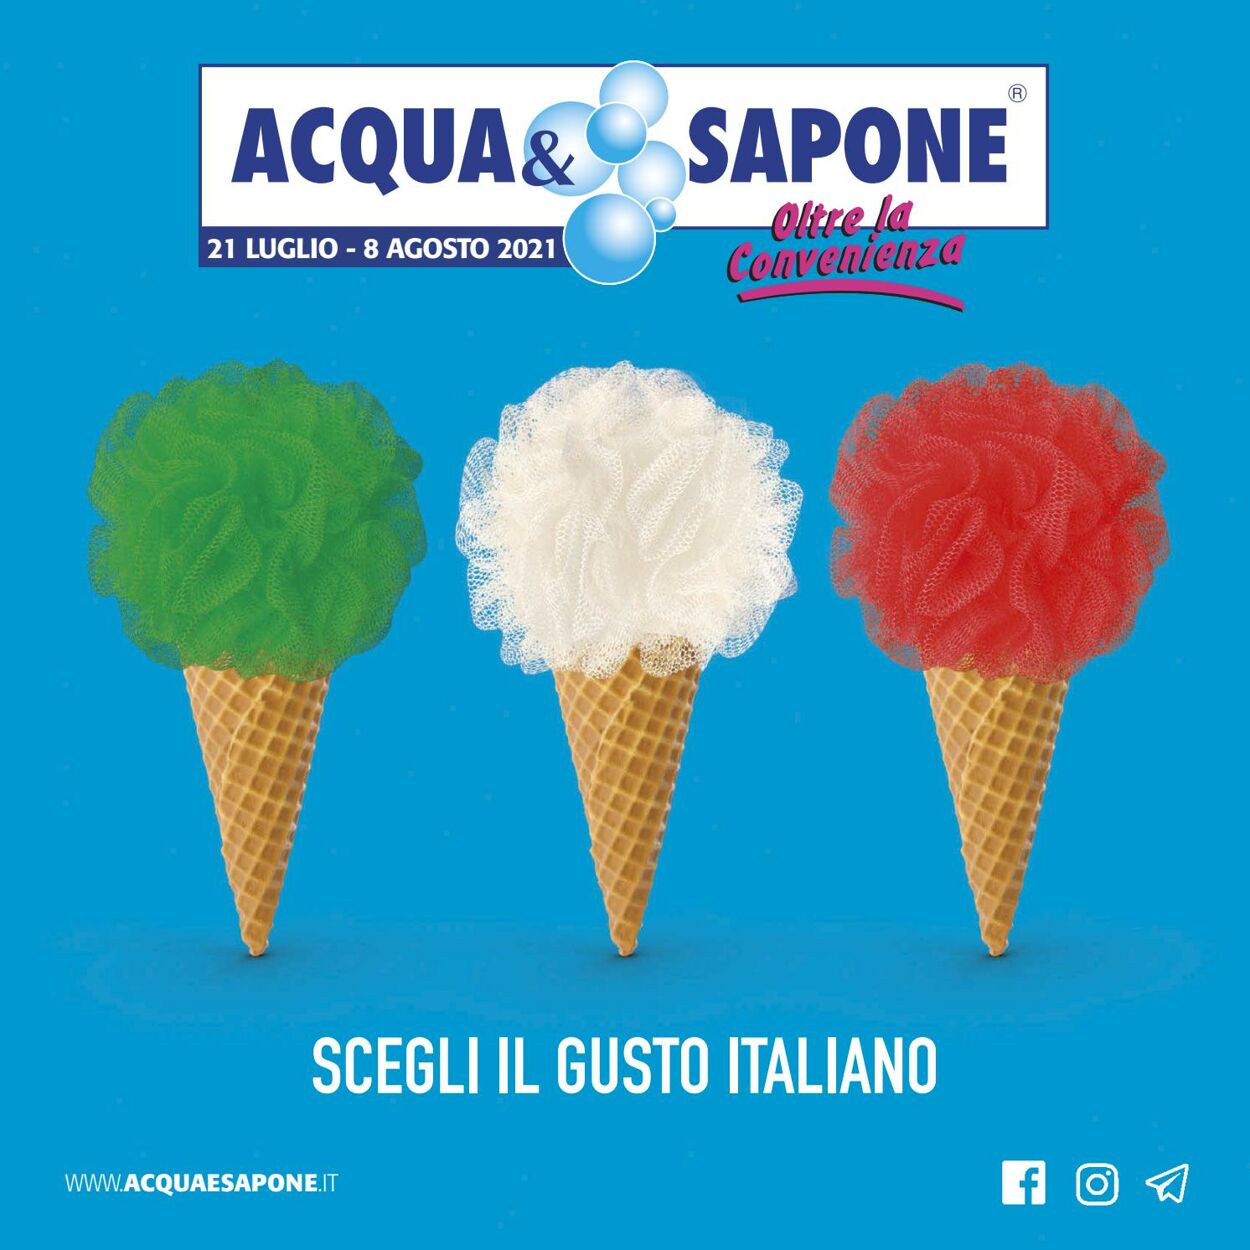 Acqua & Sapone Volantino dal 01/01/1970